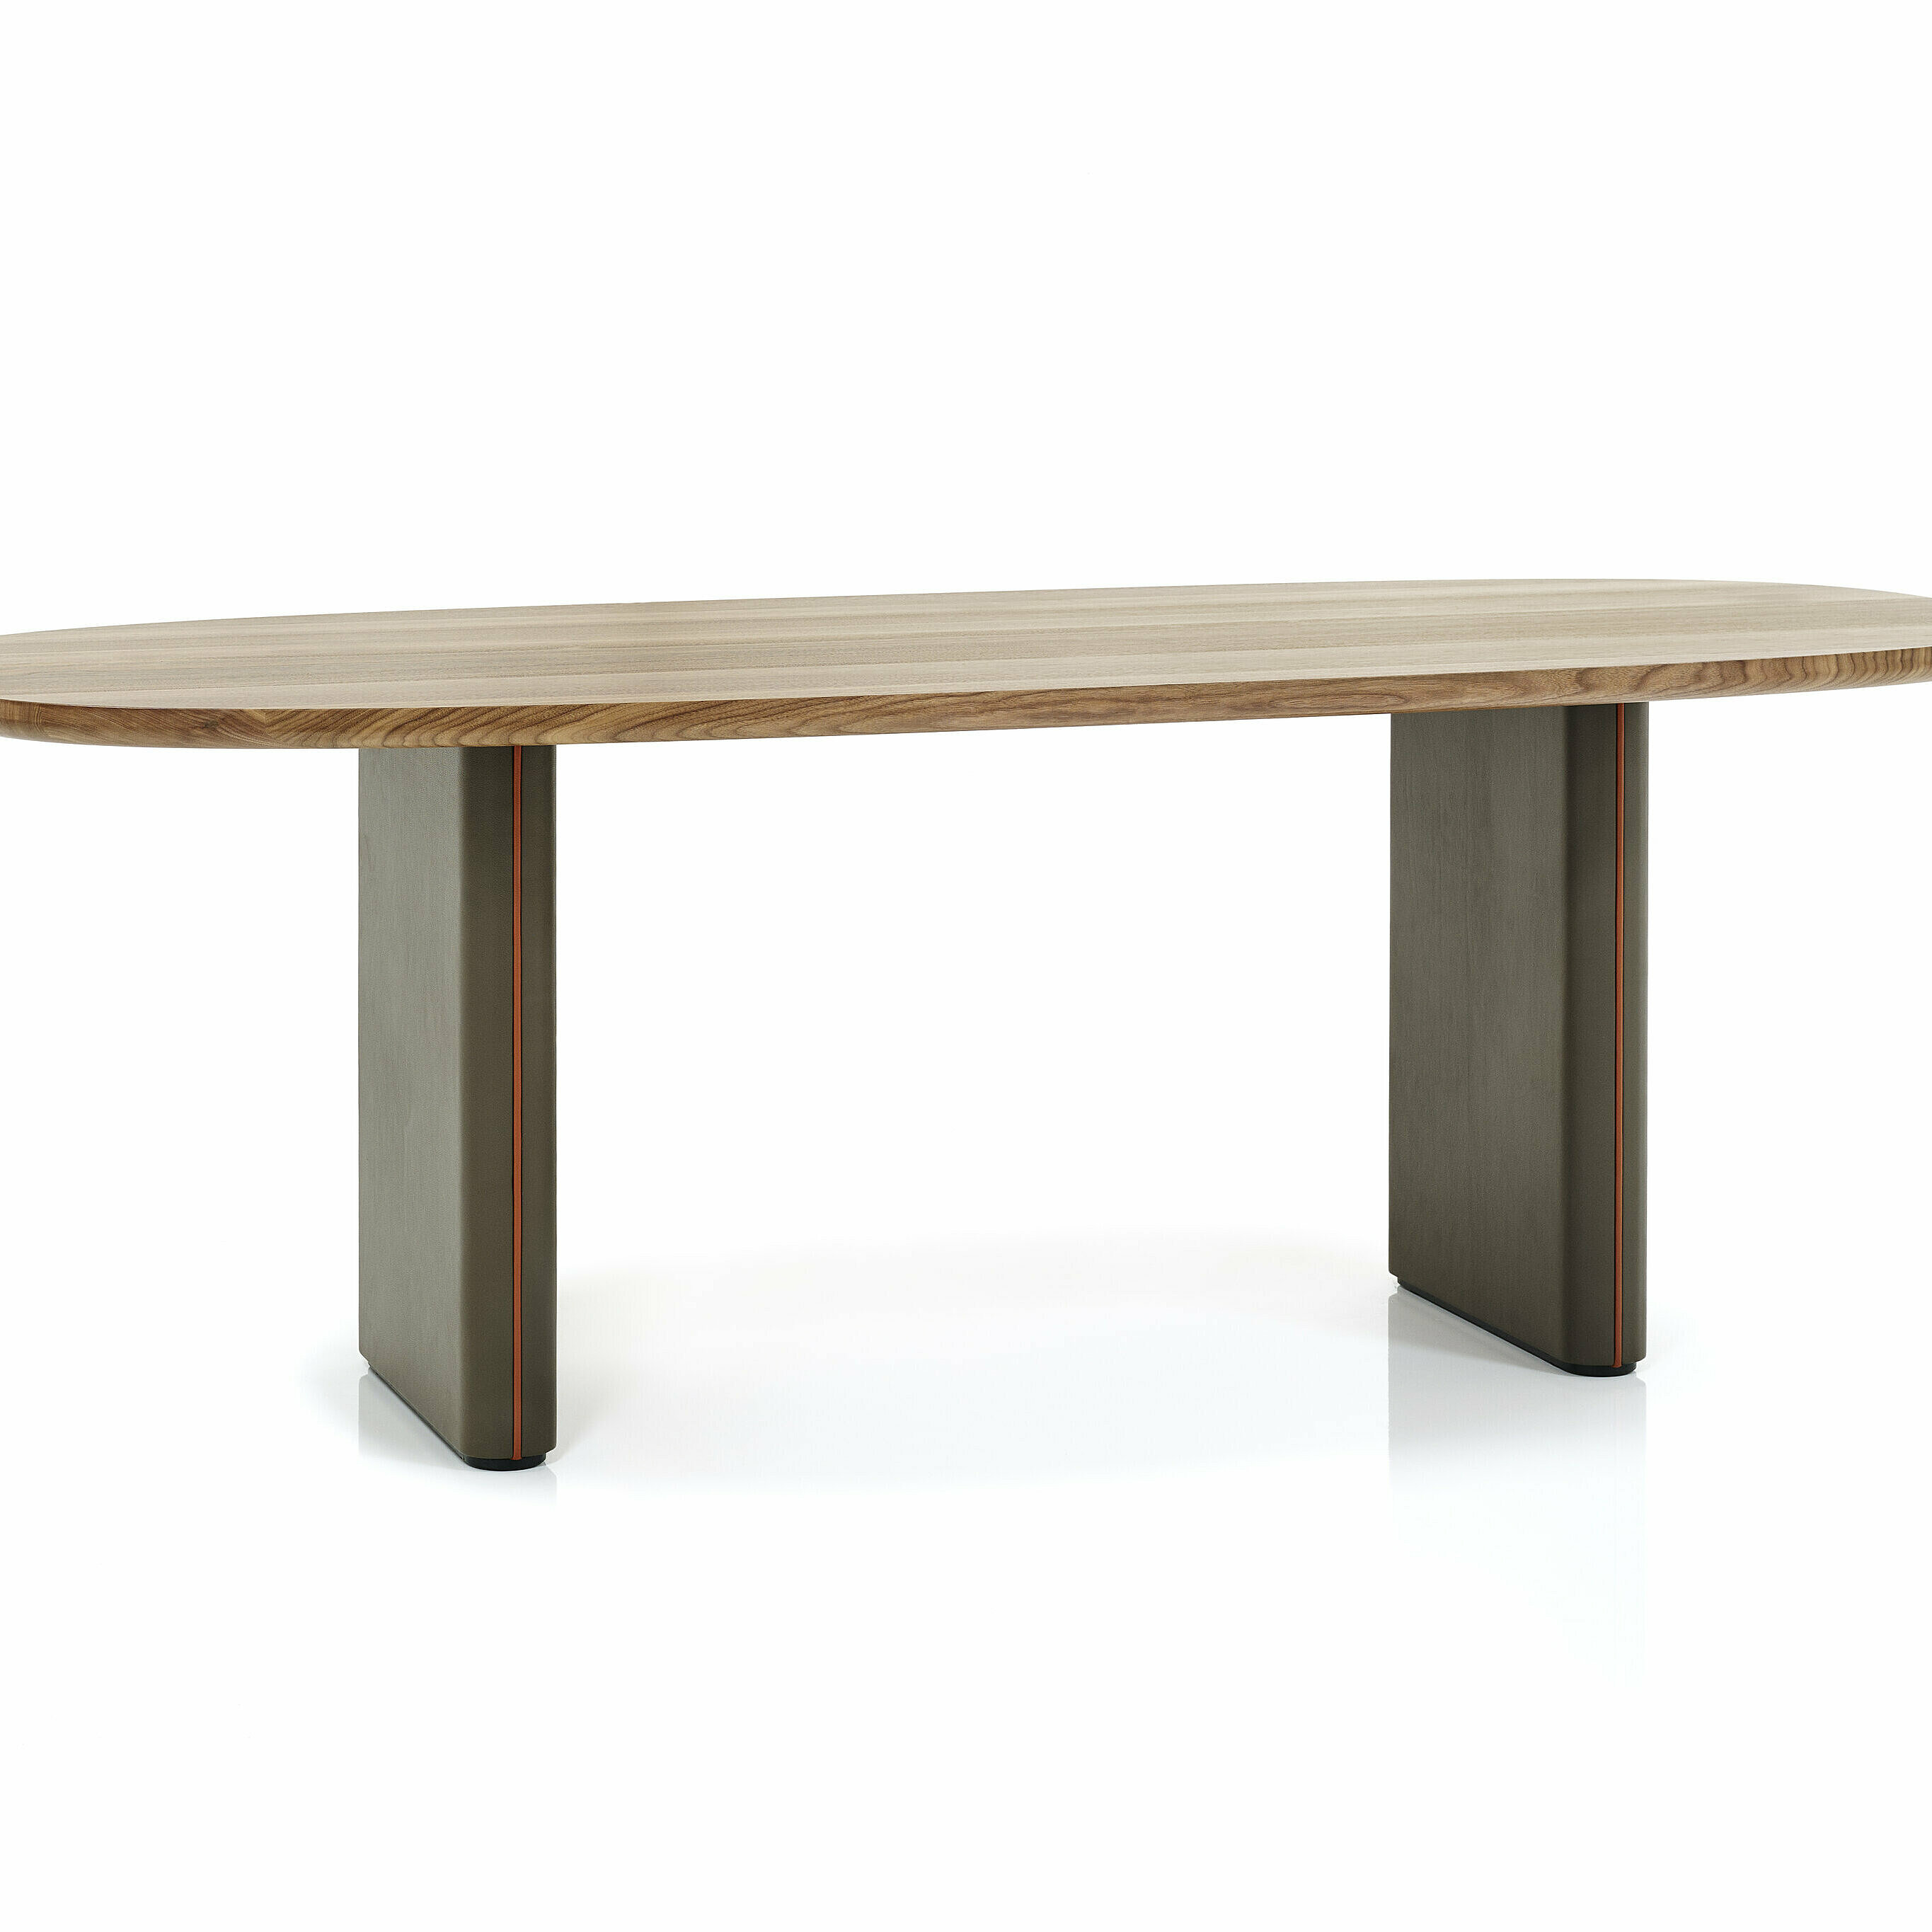 ovaler Merwyn Table mit einer Nussplatte, Tischbeine und Keder sind in einen unterschiedlichen braunen Leder